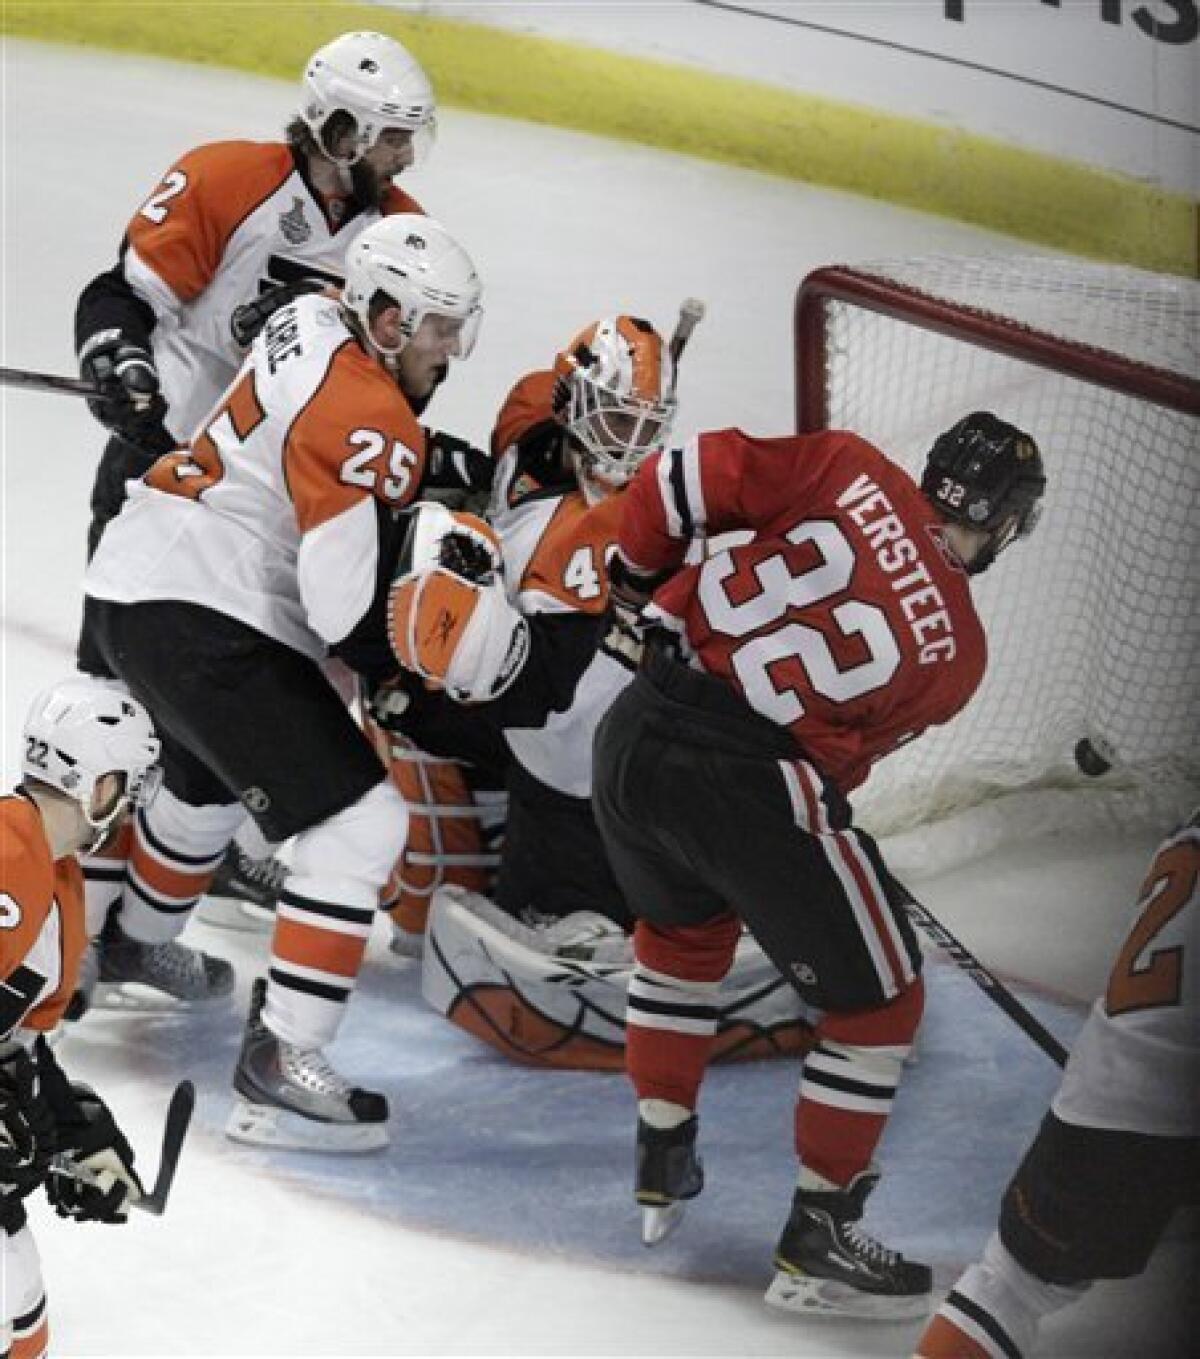 Blackhawks beat Flyers in wild Stanley Cup opener